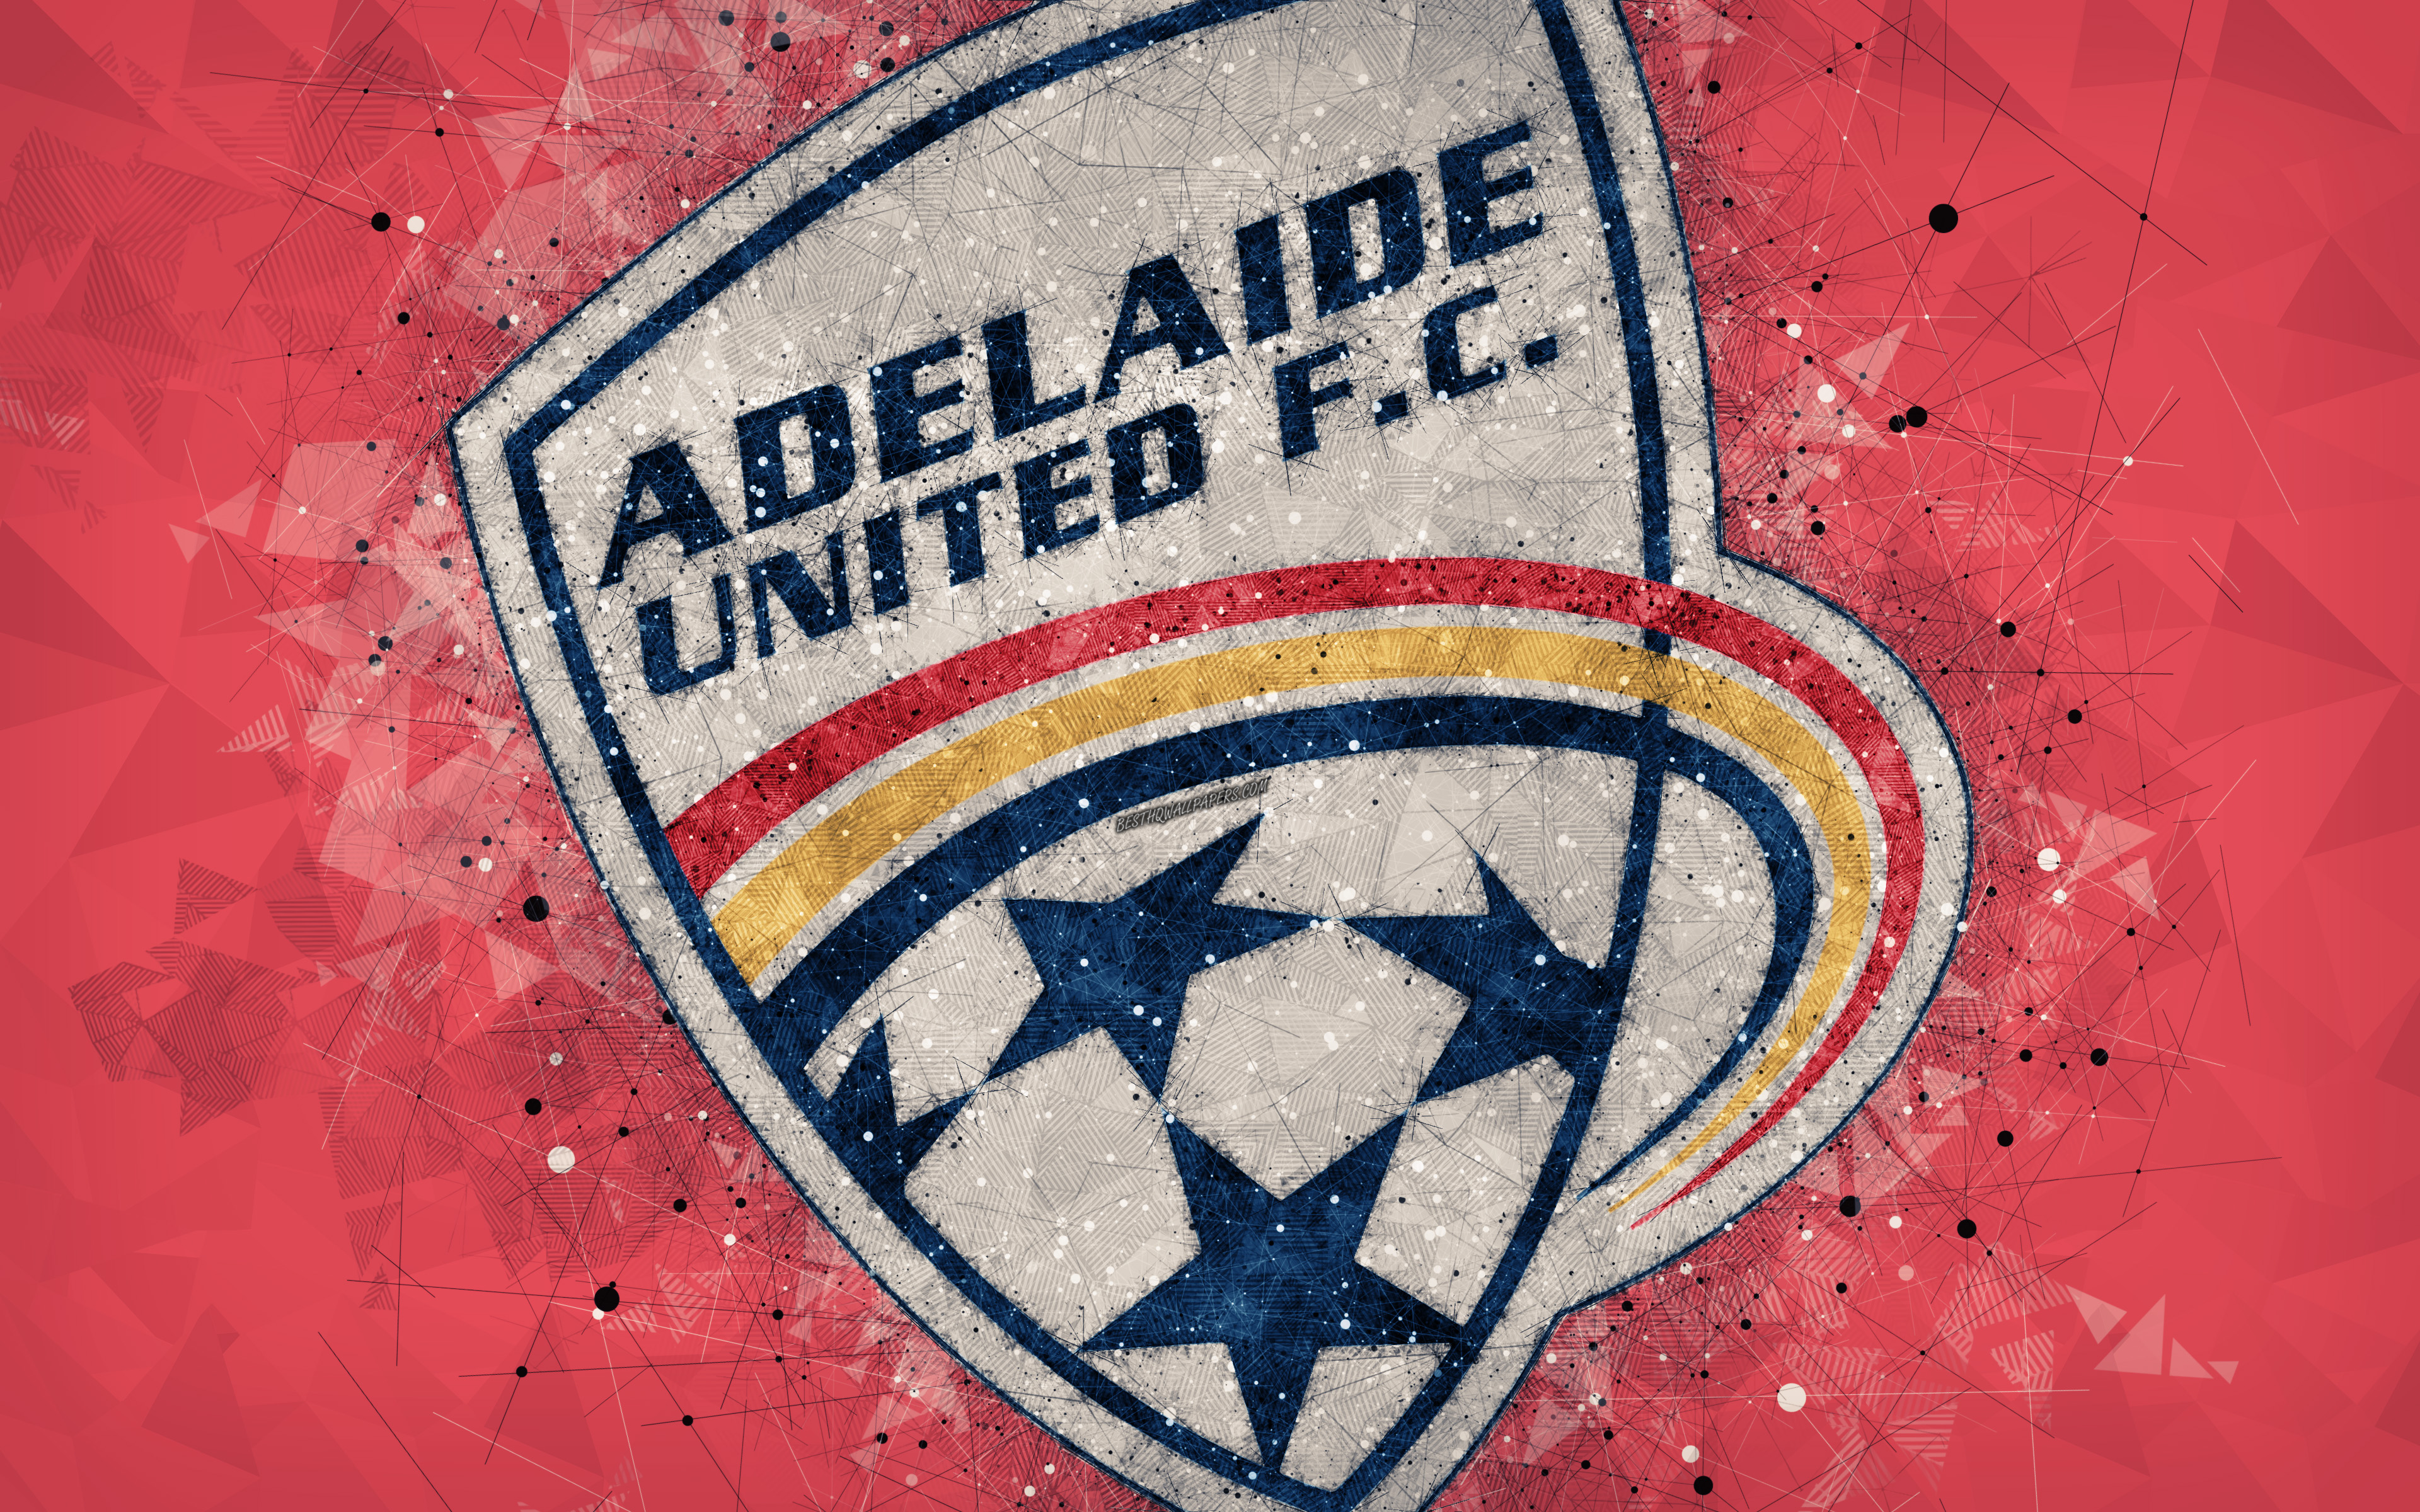 Melhores papéis de parede de Adelaide United Fc para tela do telefone